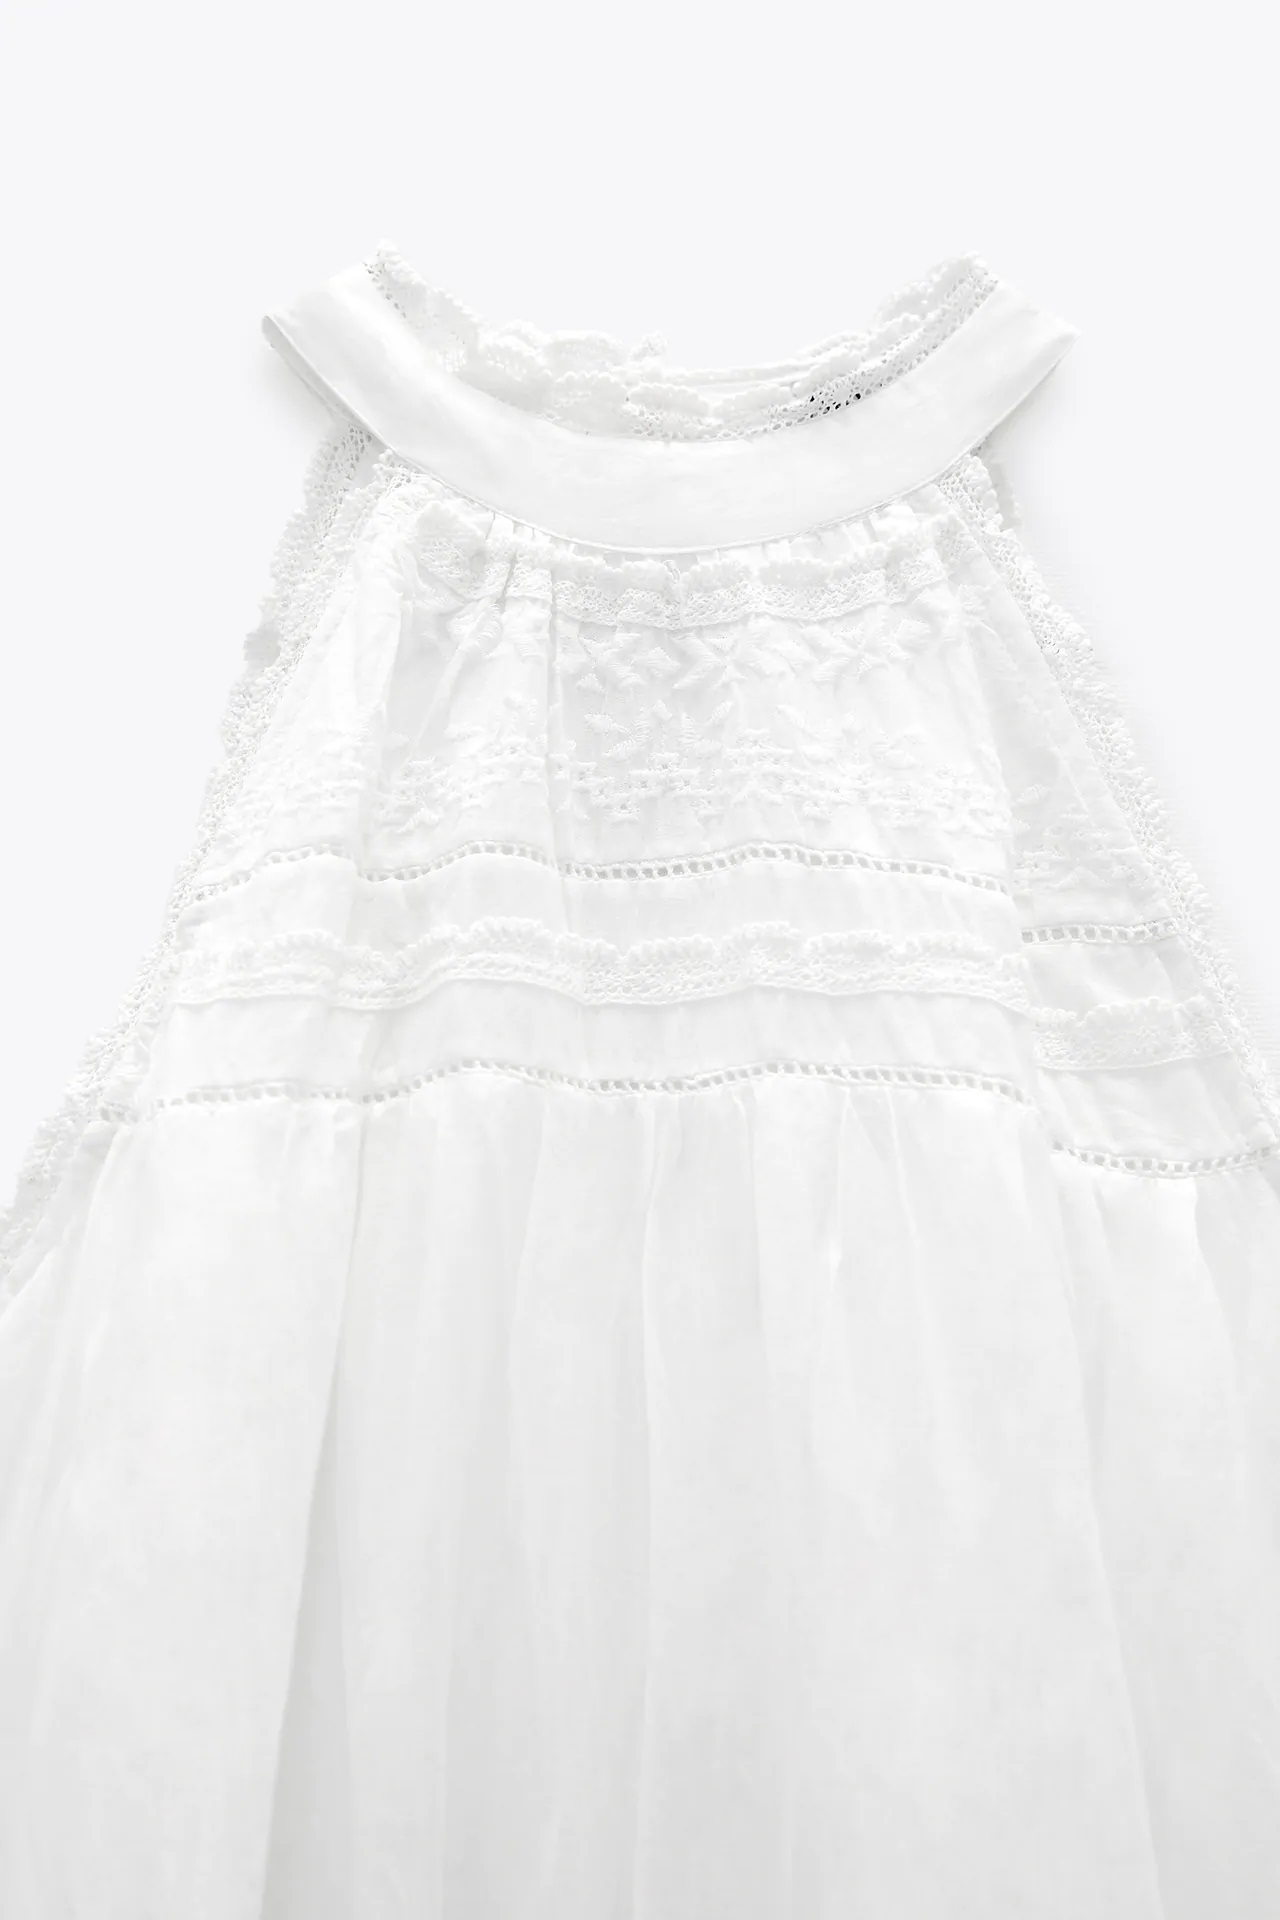 El vestido blanco de Zara que luce Amelia Bono es perfecto para las vacaciones de verano 